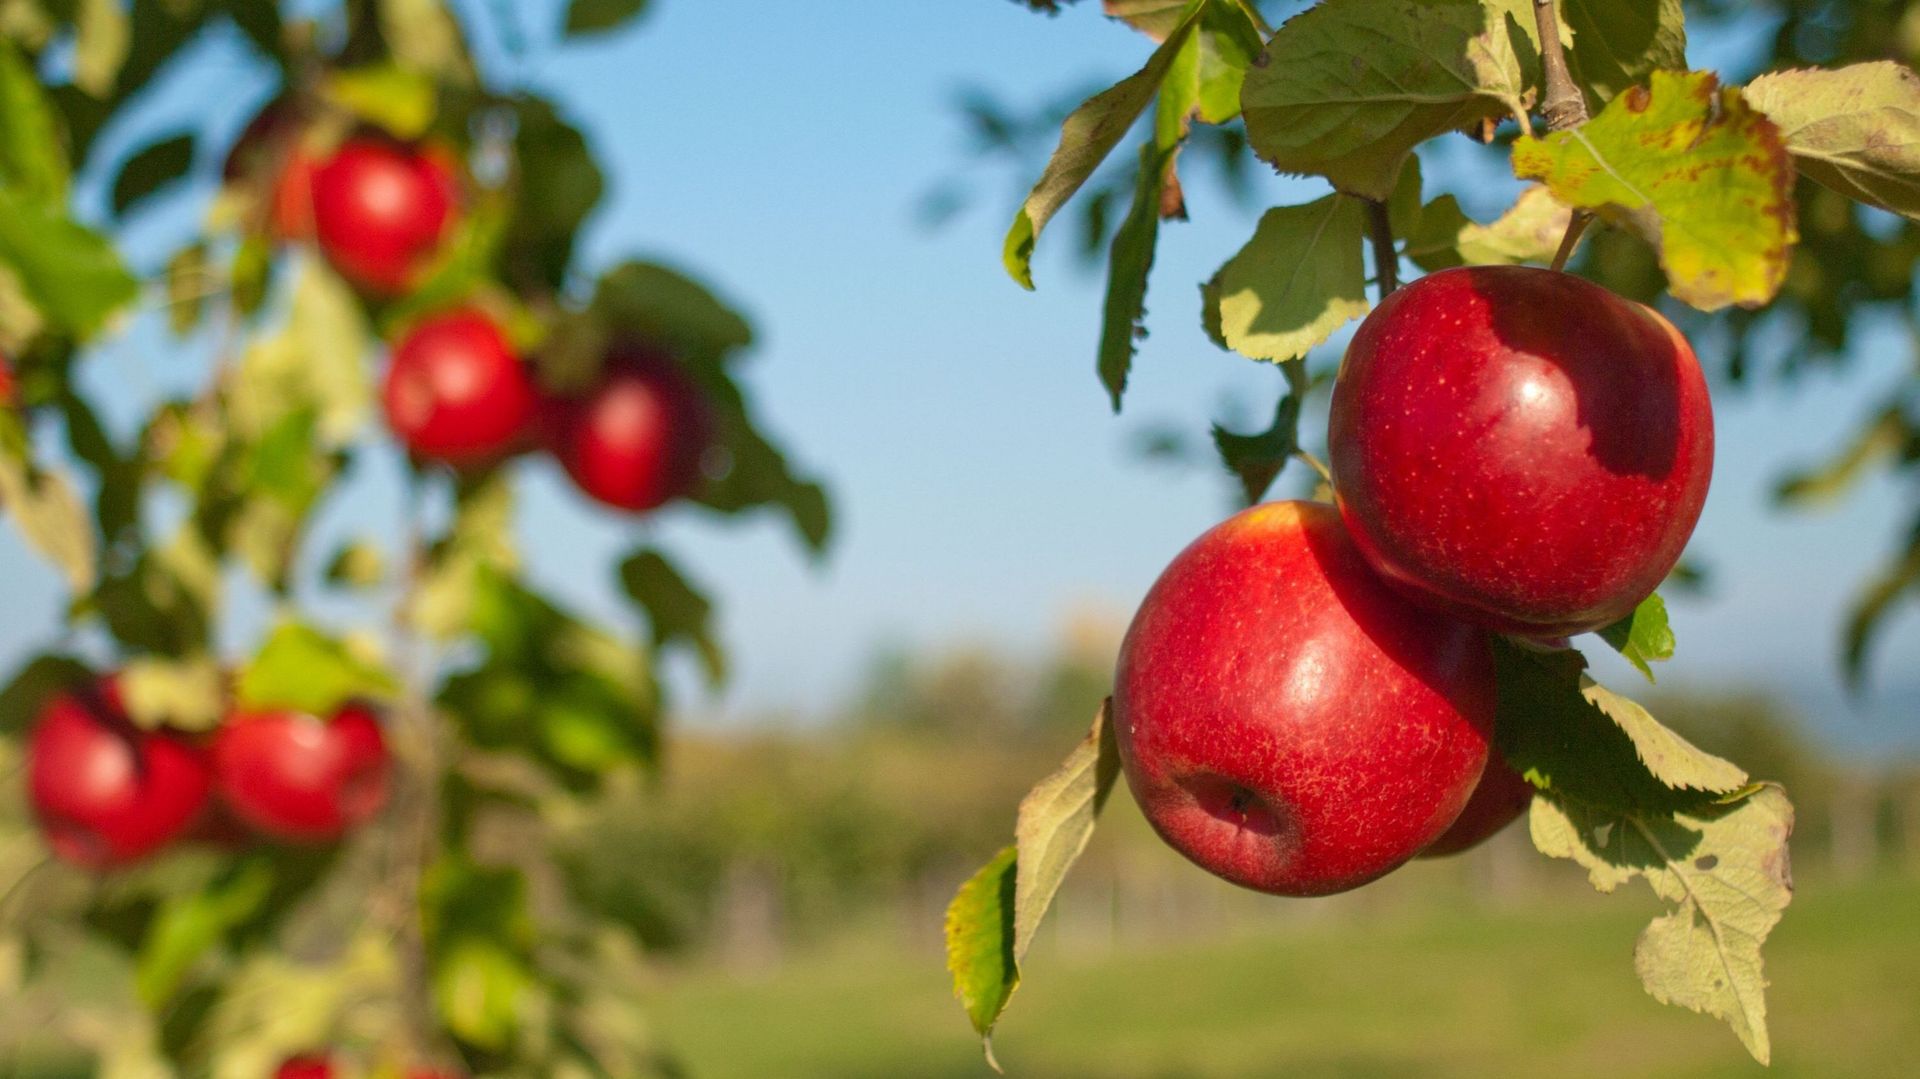 La Jonagold est la variété de pommes belges la plus importante, suivie par les Jonagored, Boskoop et Golden Delicious